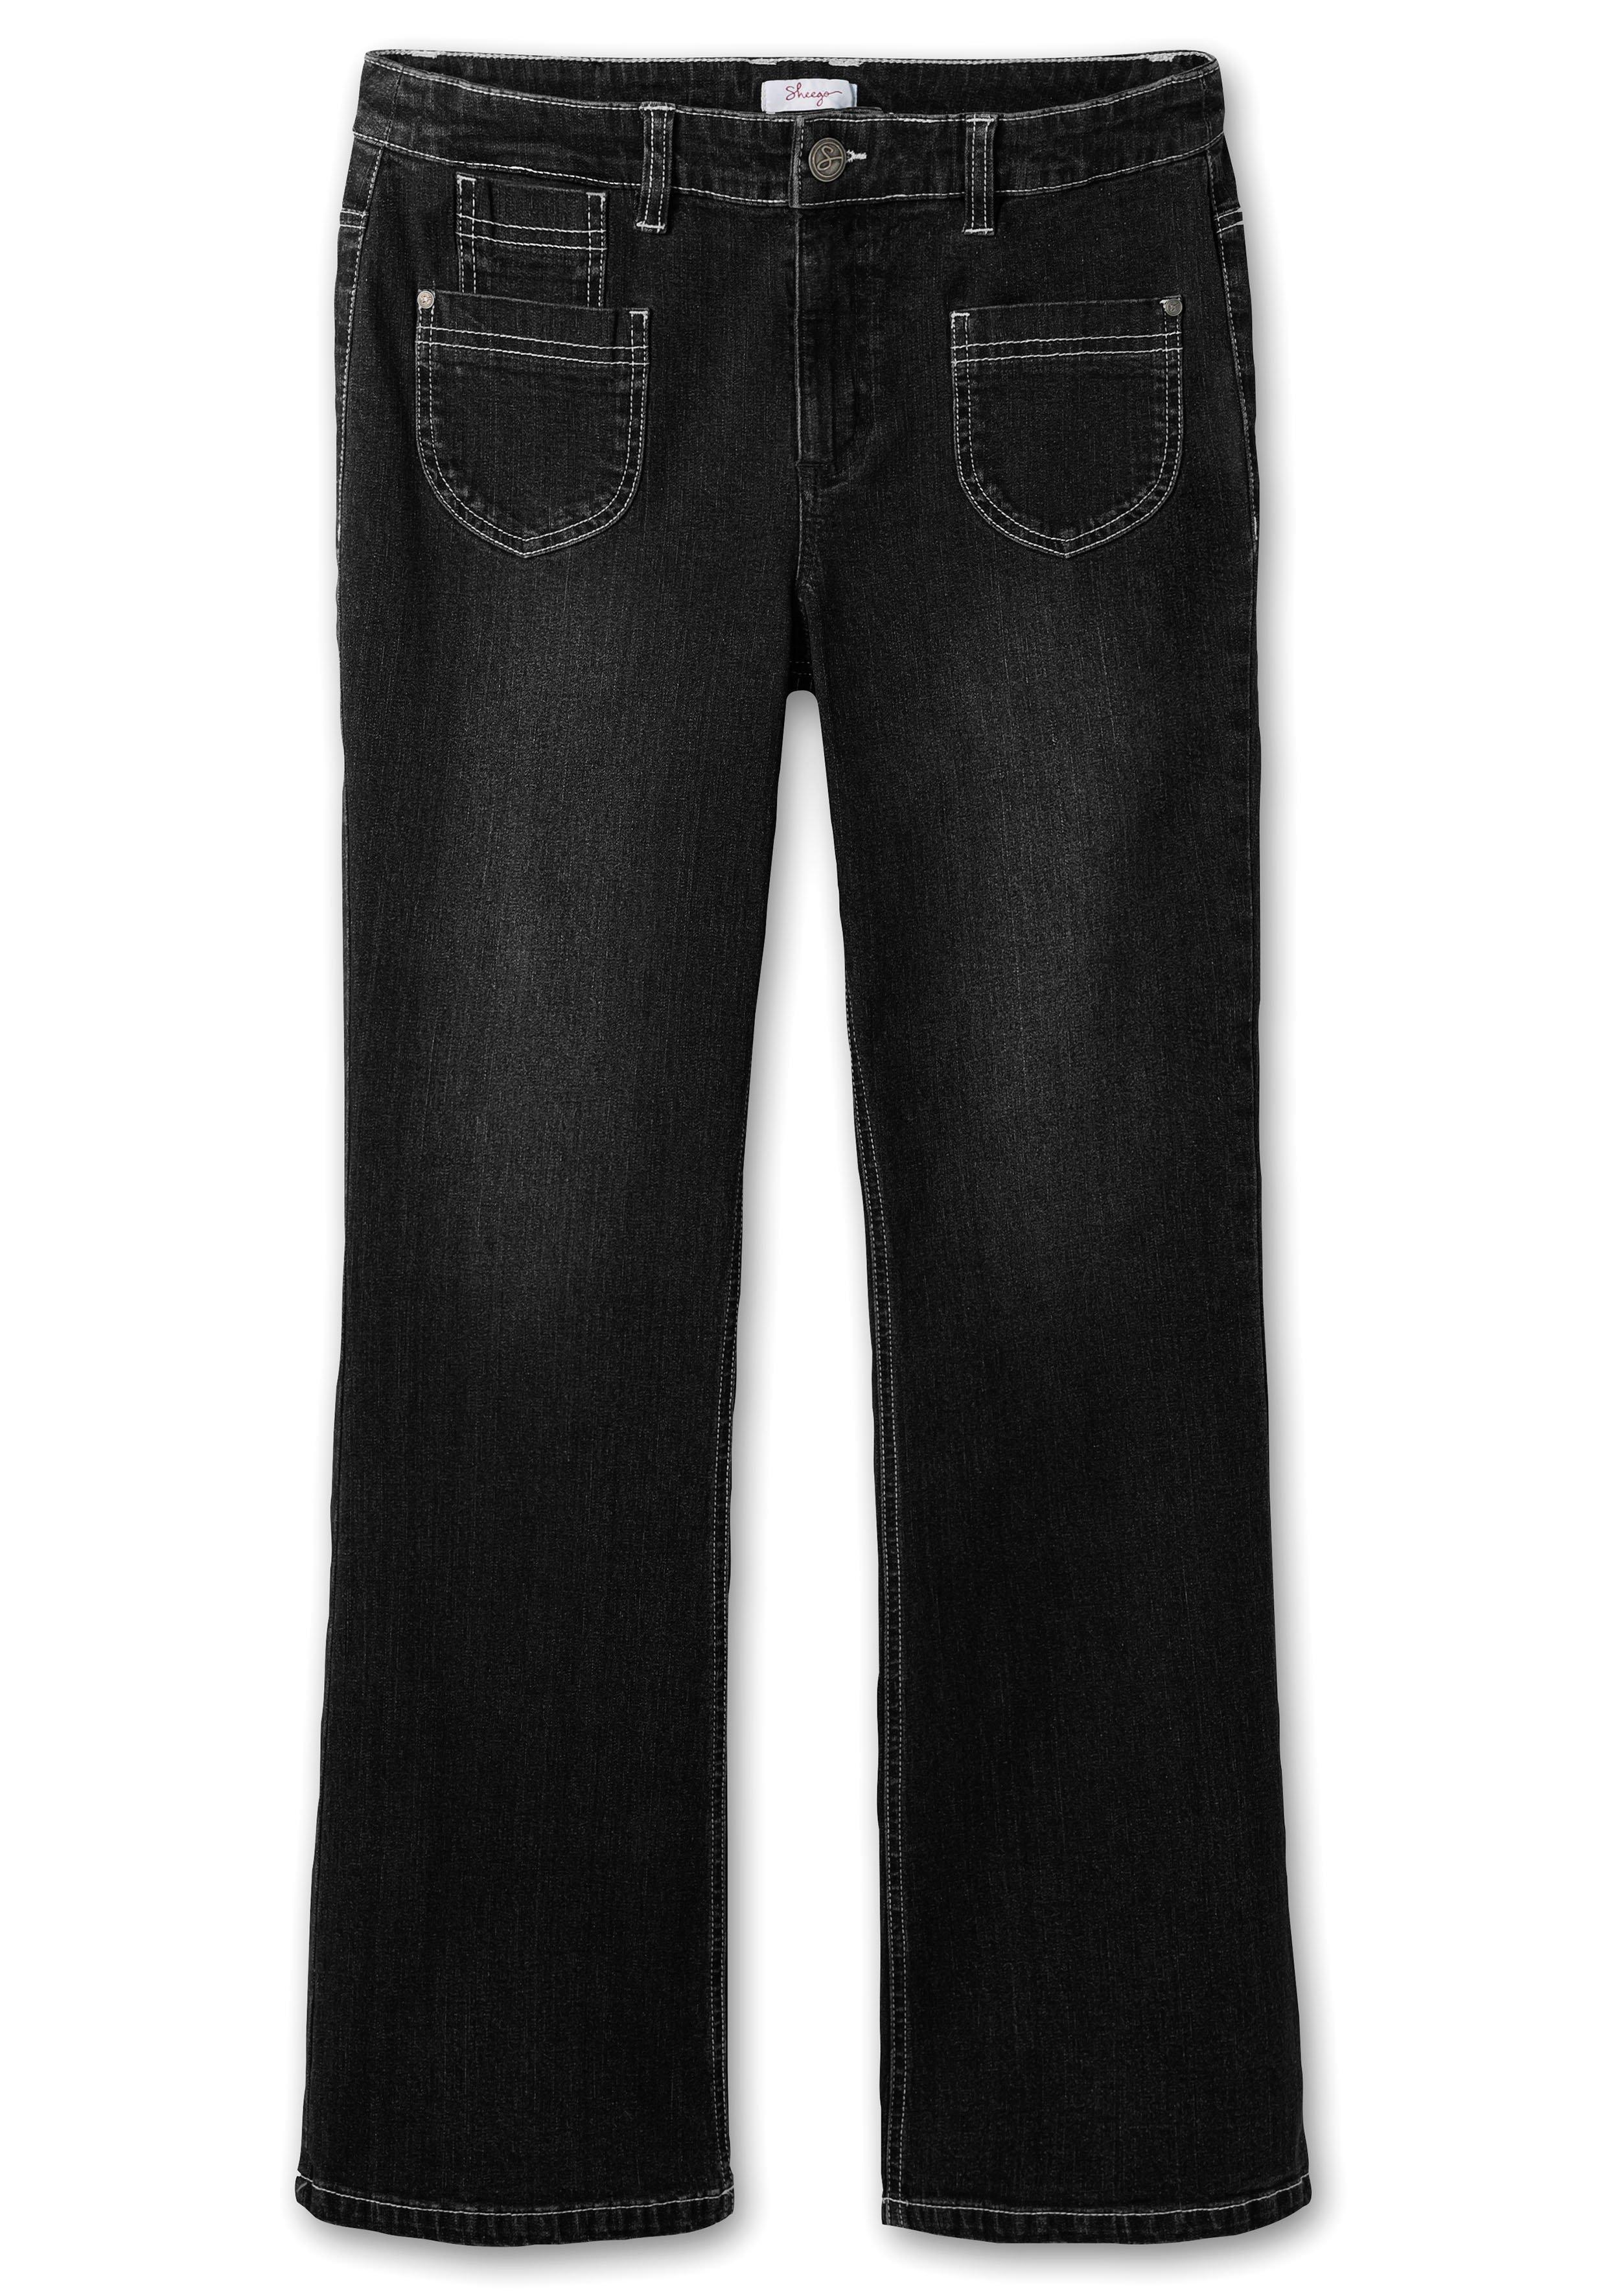 Bootcut-Jeans in High-Heel-Länge, mit Kontrastnähten | Denim sheego blue - dark